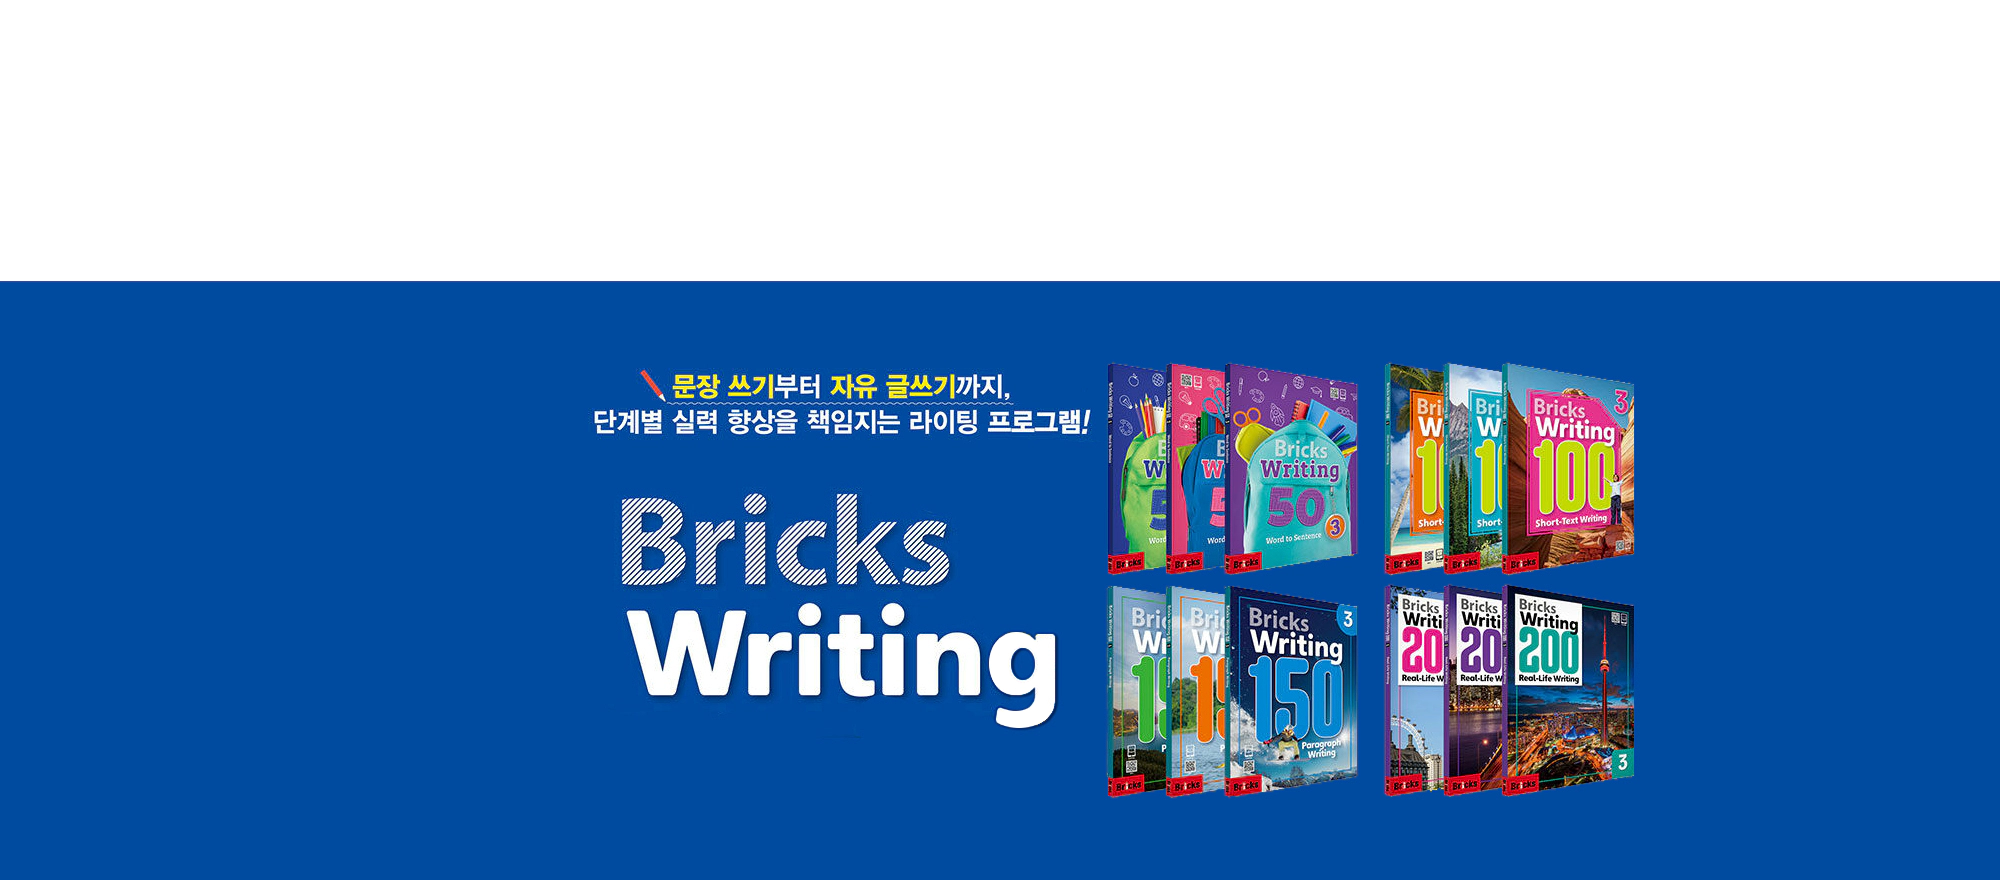 Bricks Writing